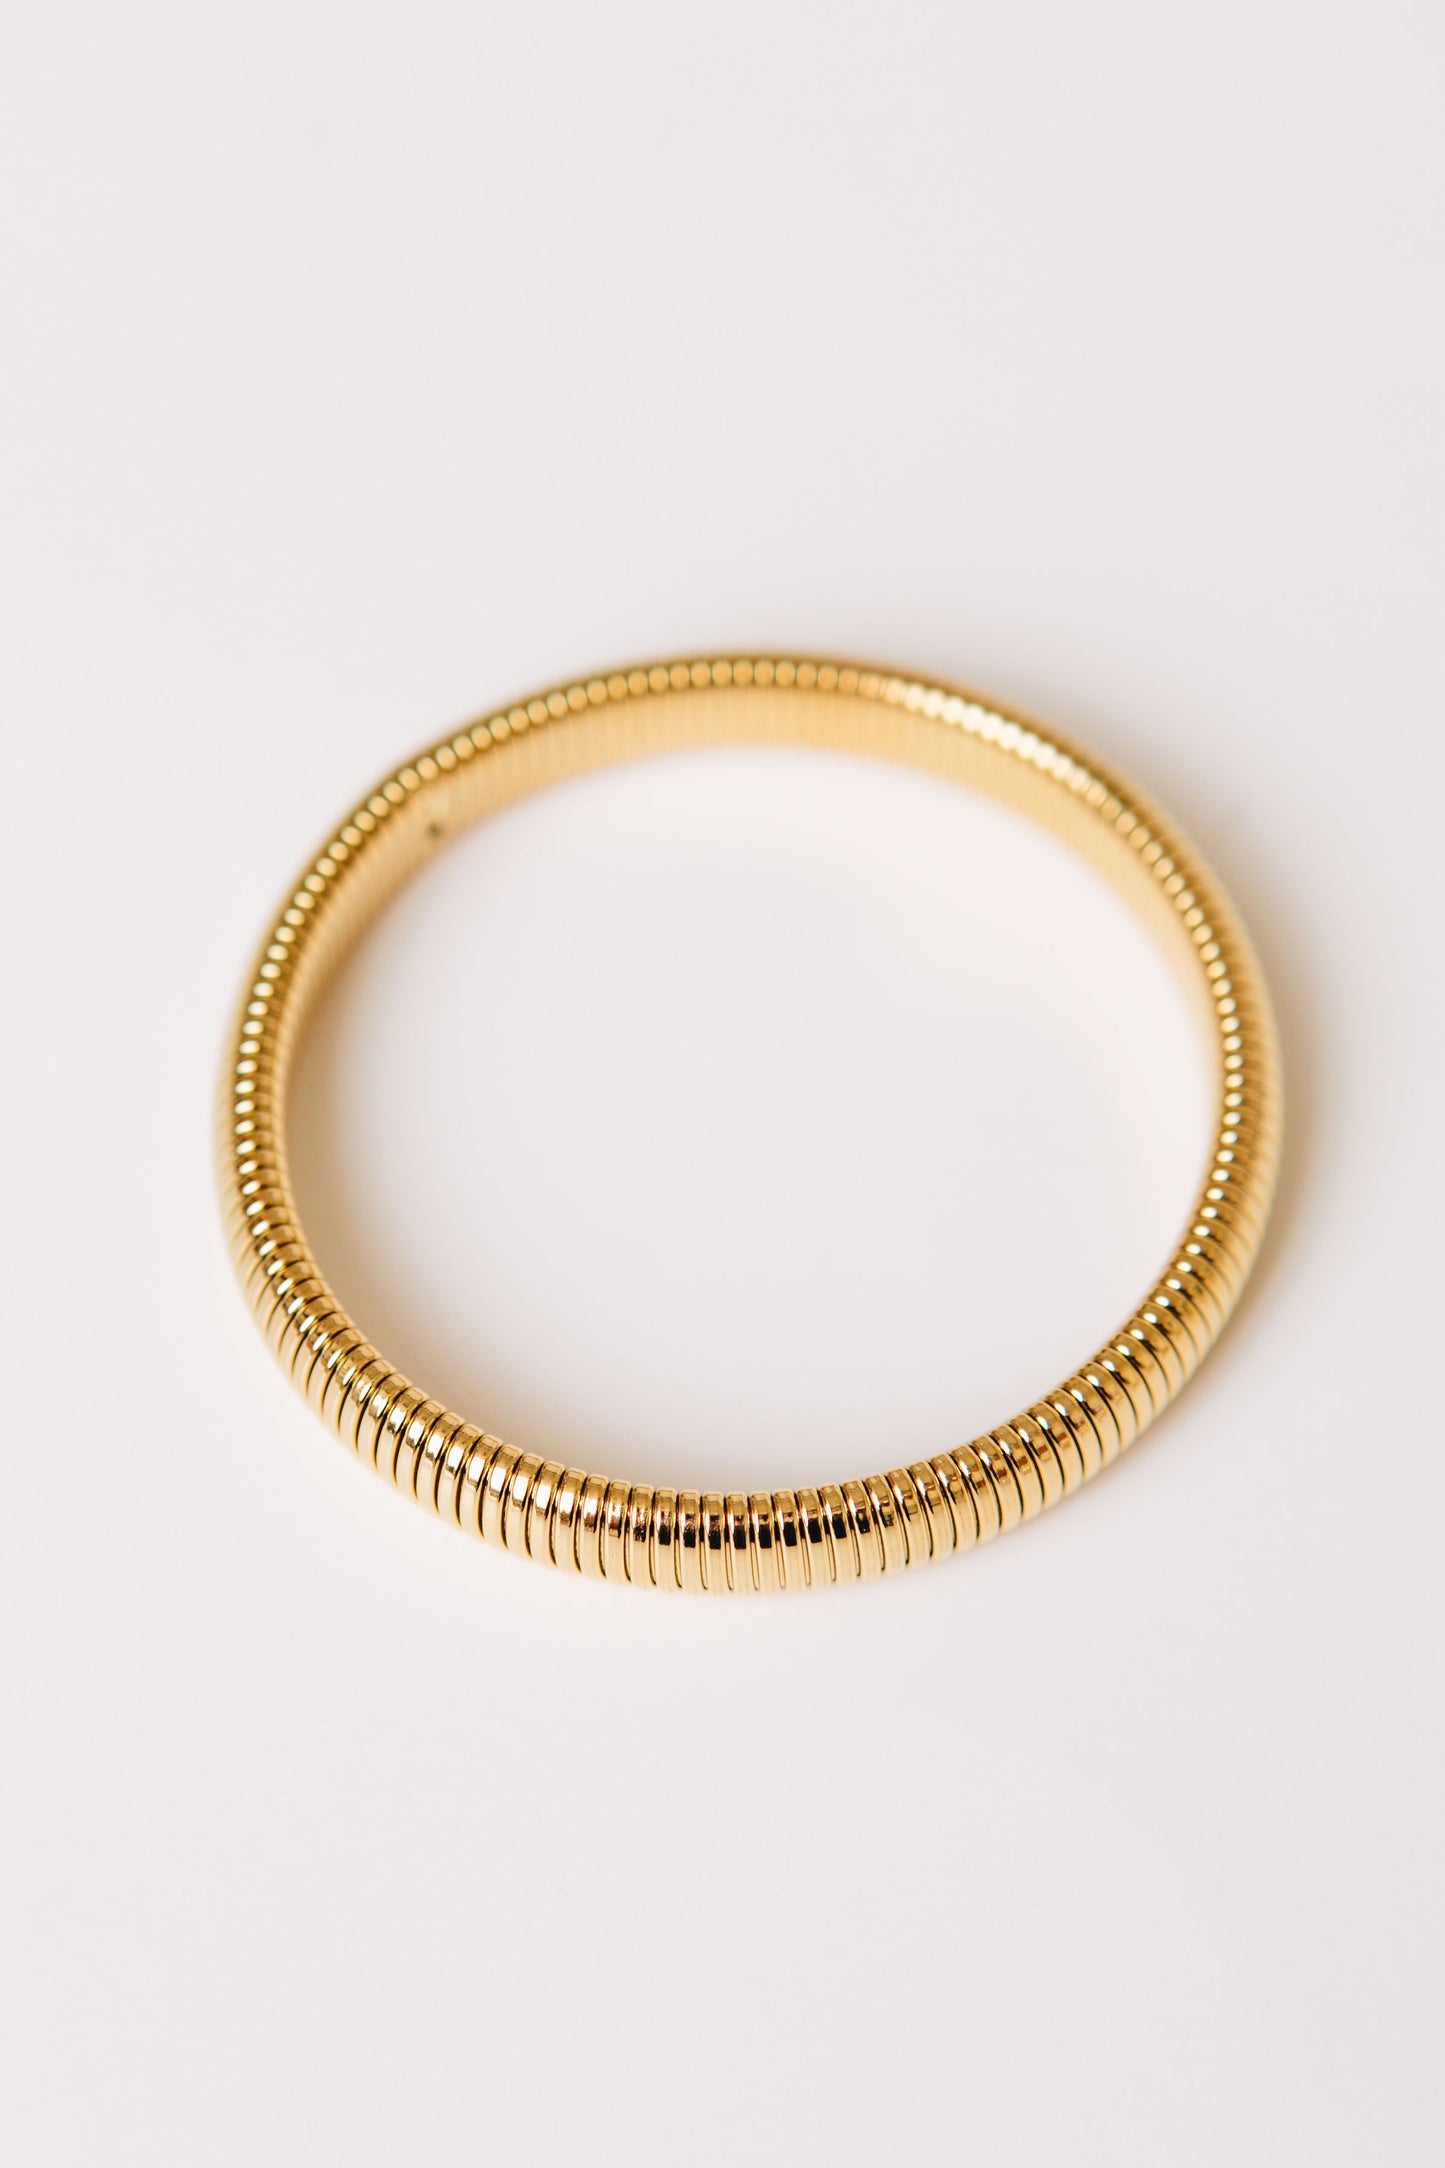 Celeste Chic Gold Plated Stretch Bracelet (L)